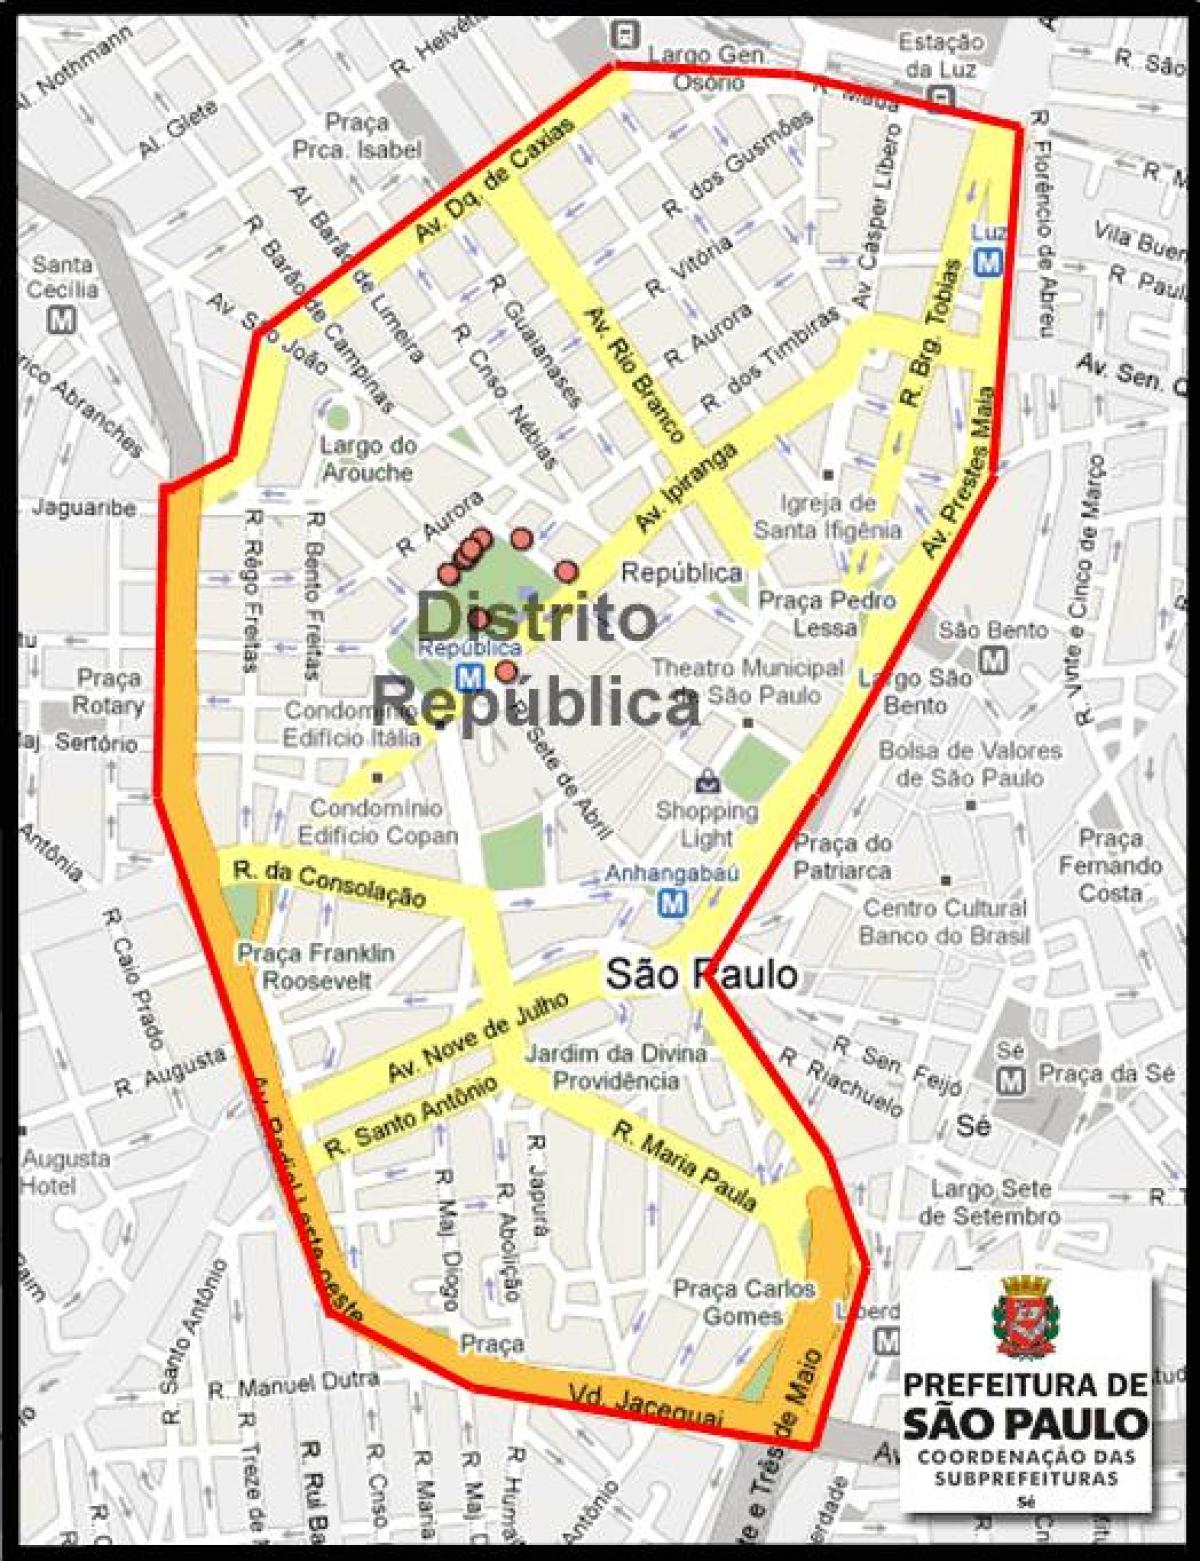 Kort over República, São Paulo